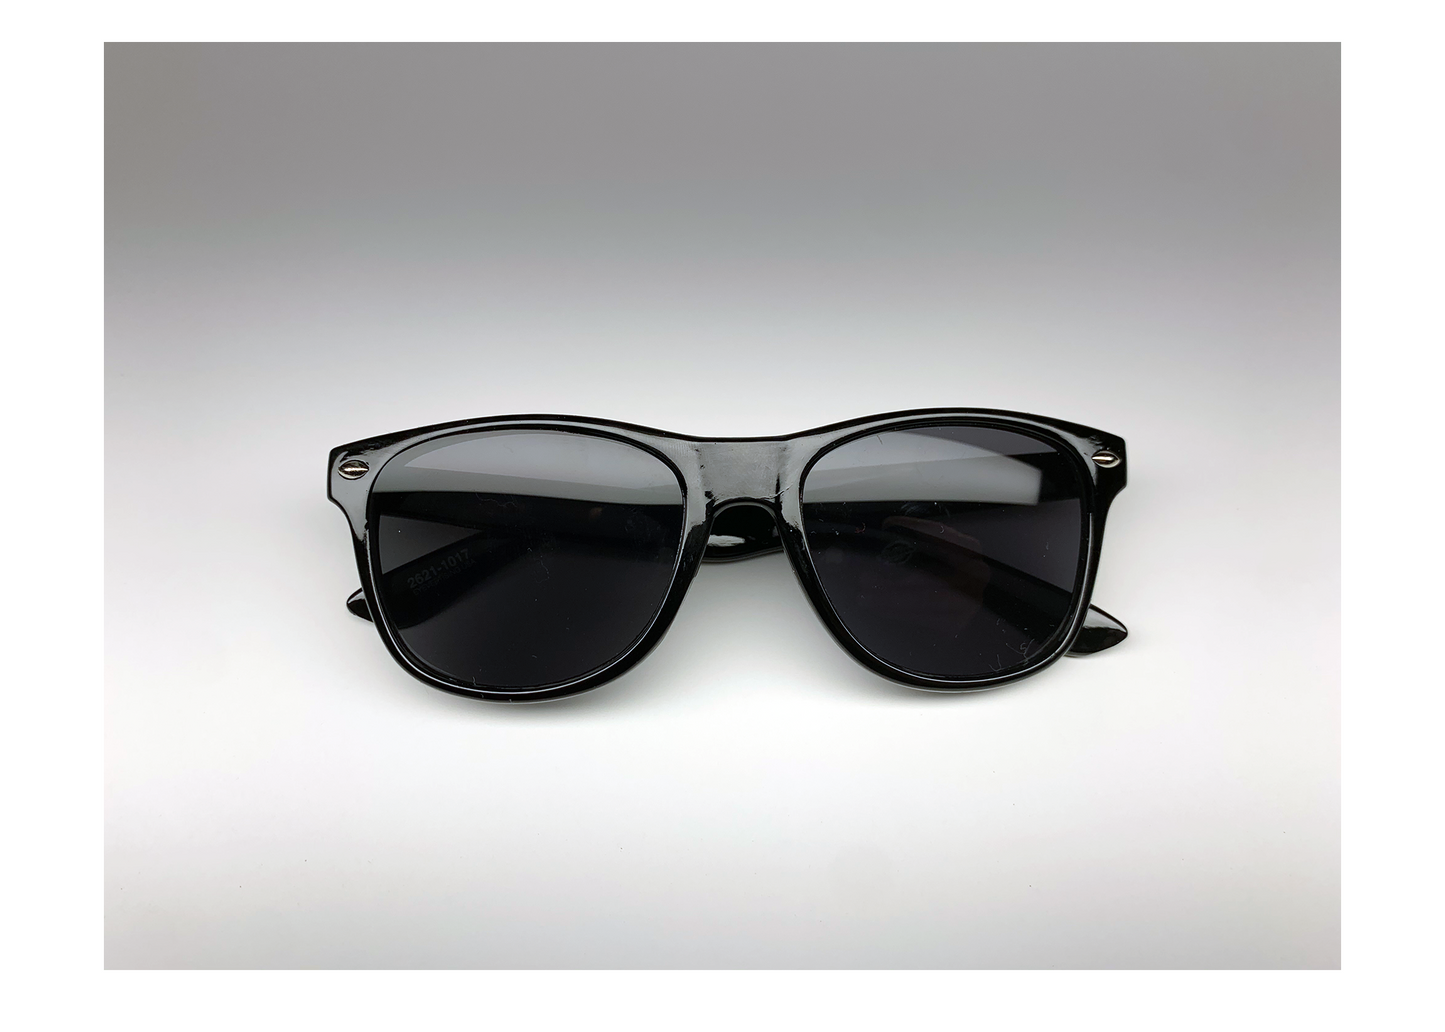 Gafas de sol de diseñador HB Collection